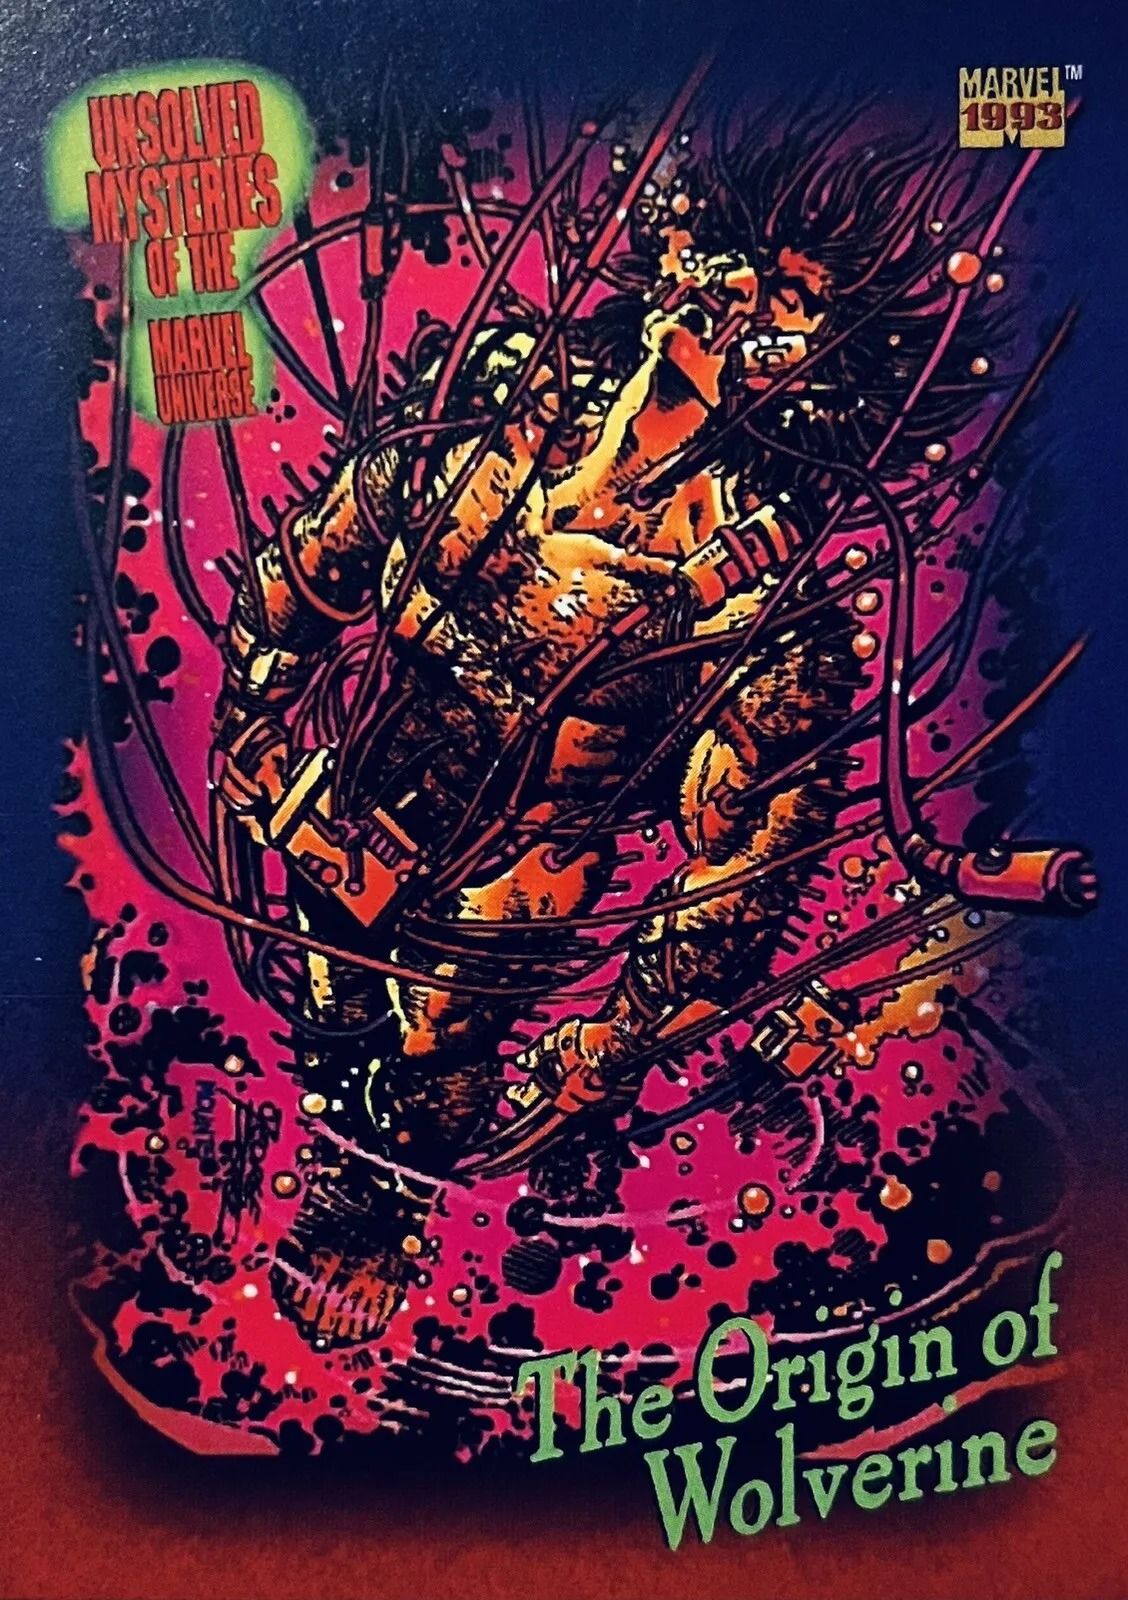 Karta kolekcjonerska przedstawiająca pochodzenie Wolverine'a